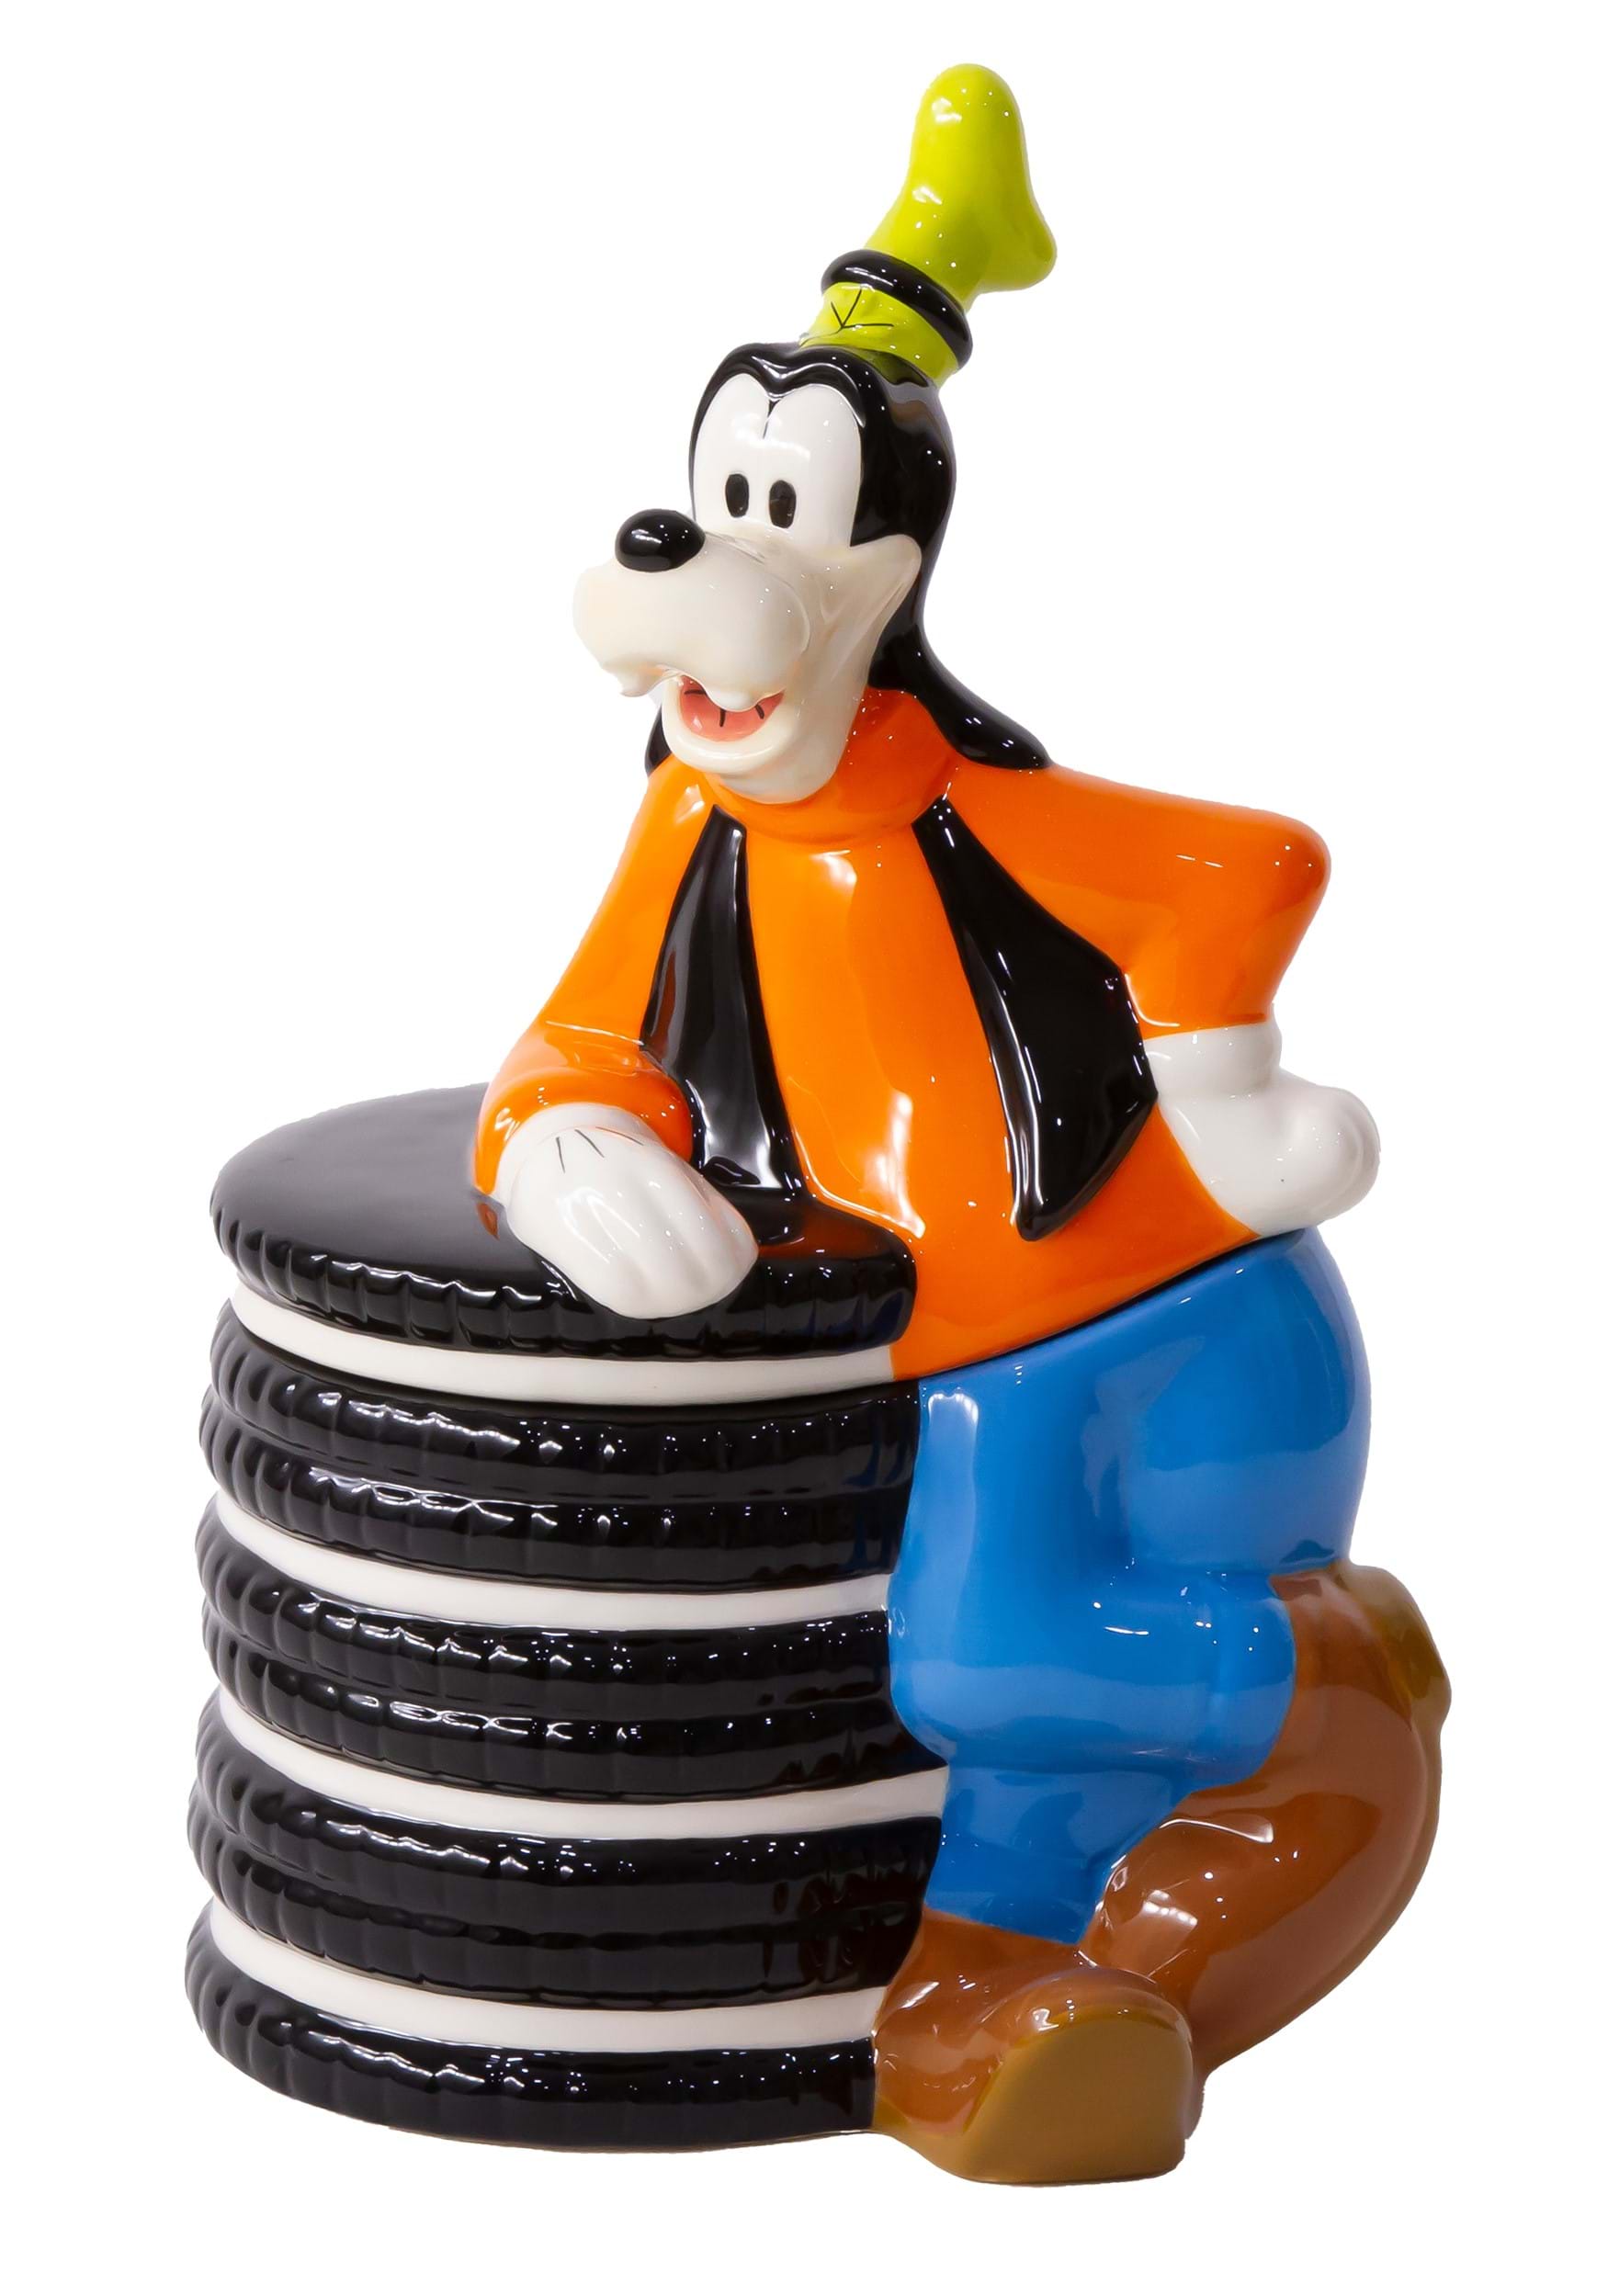 Disney Goofy Cookie Jar with Cookies